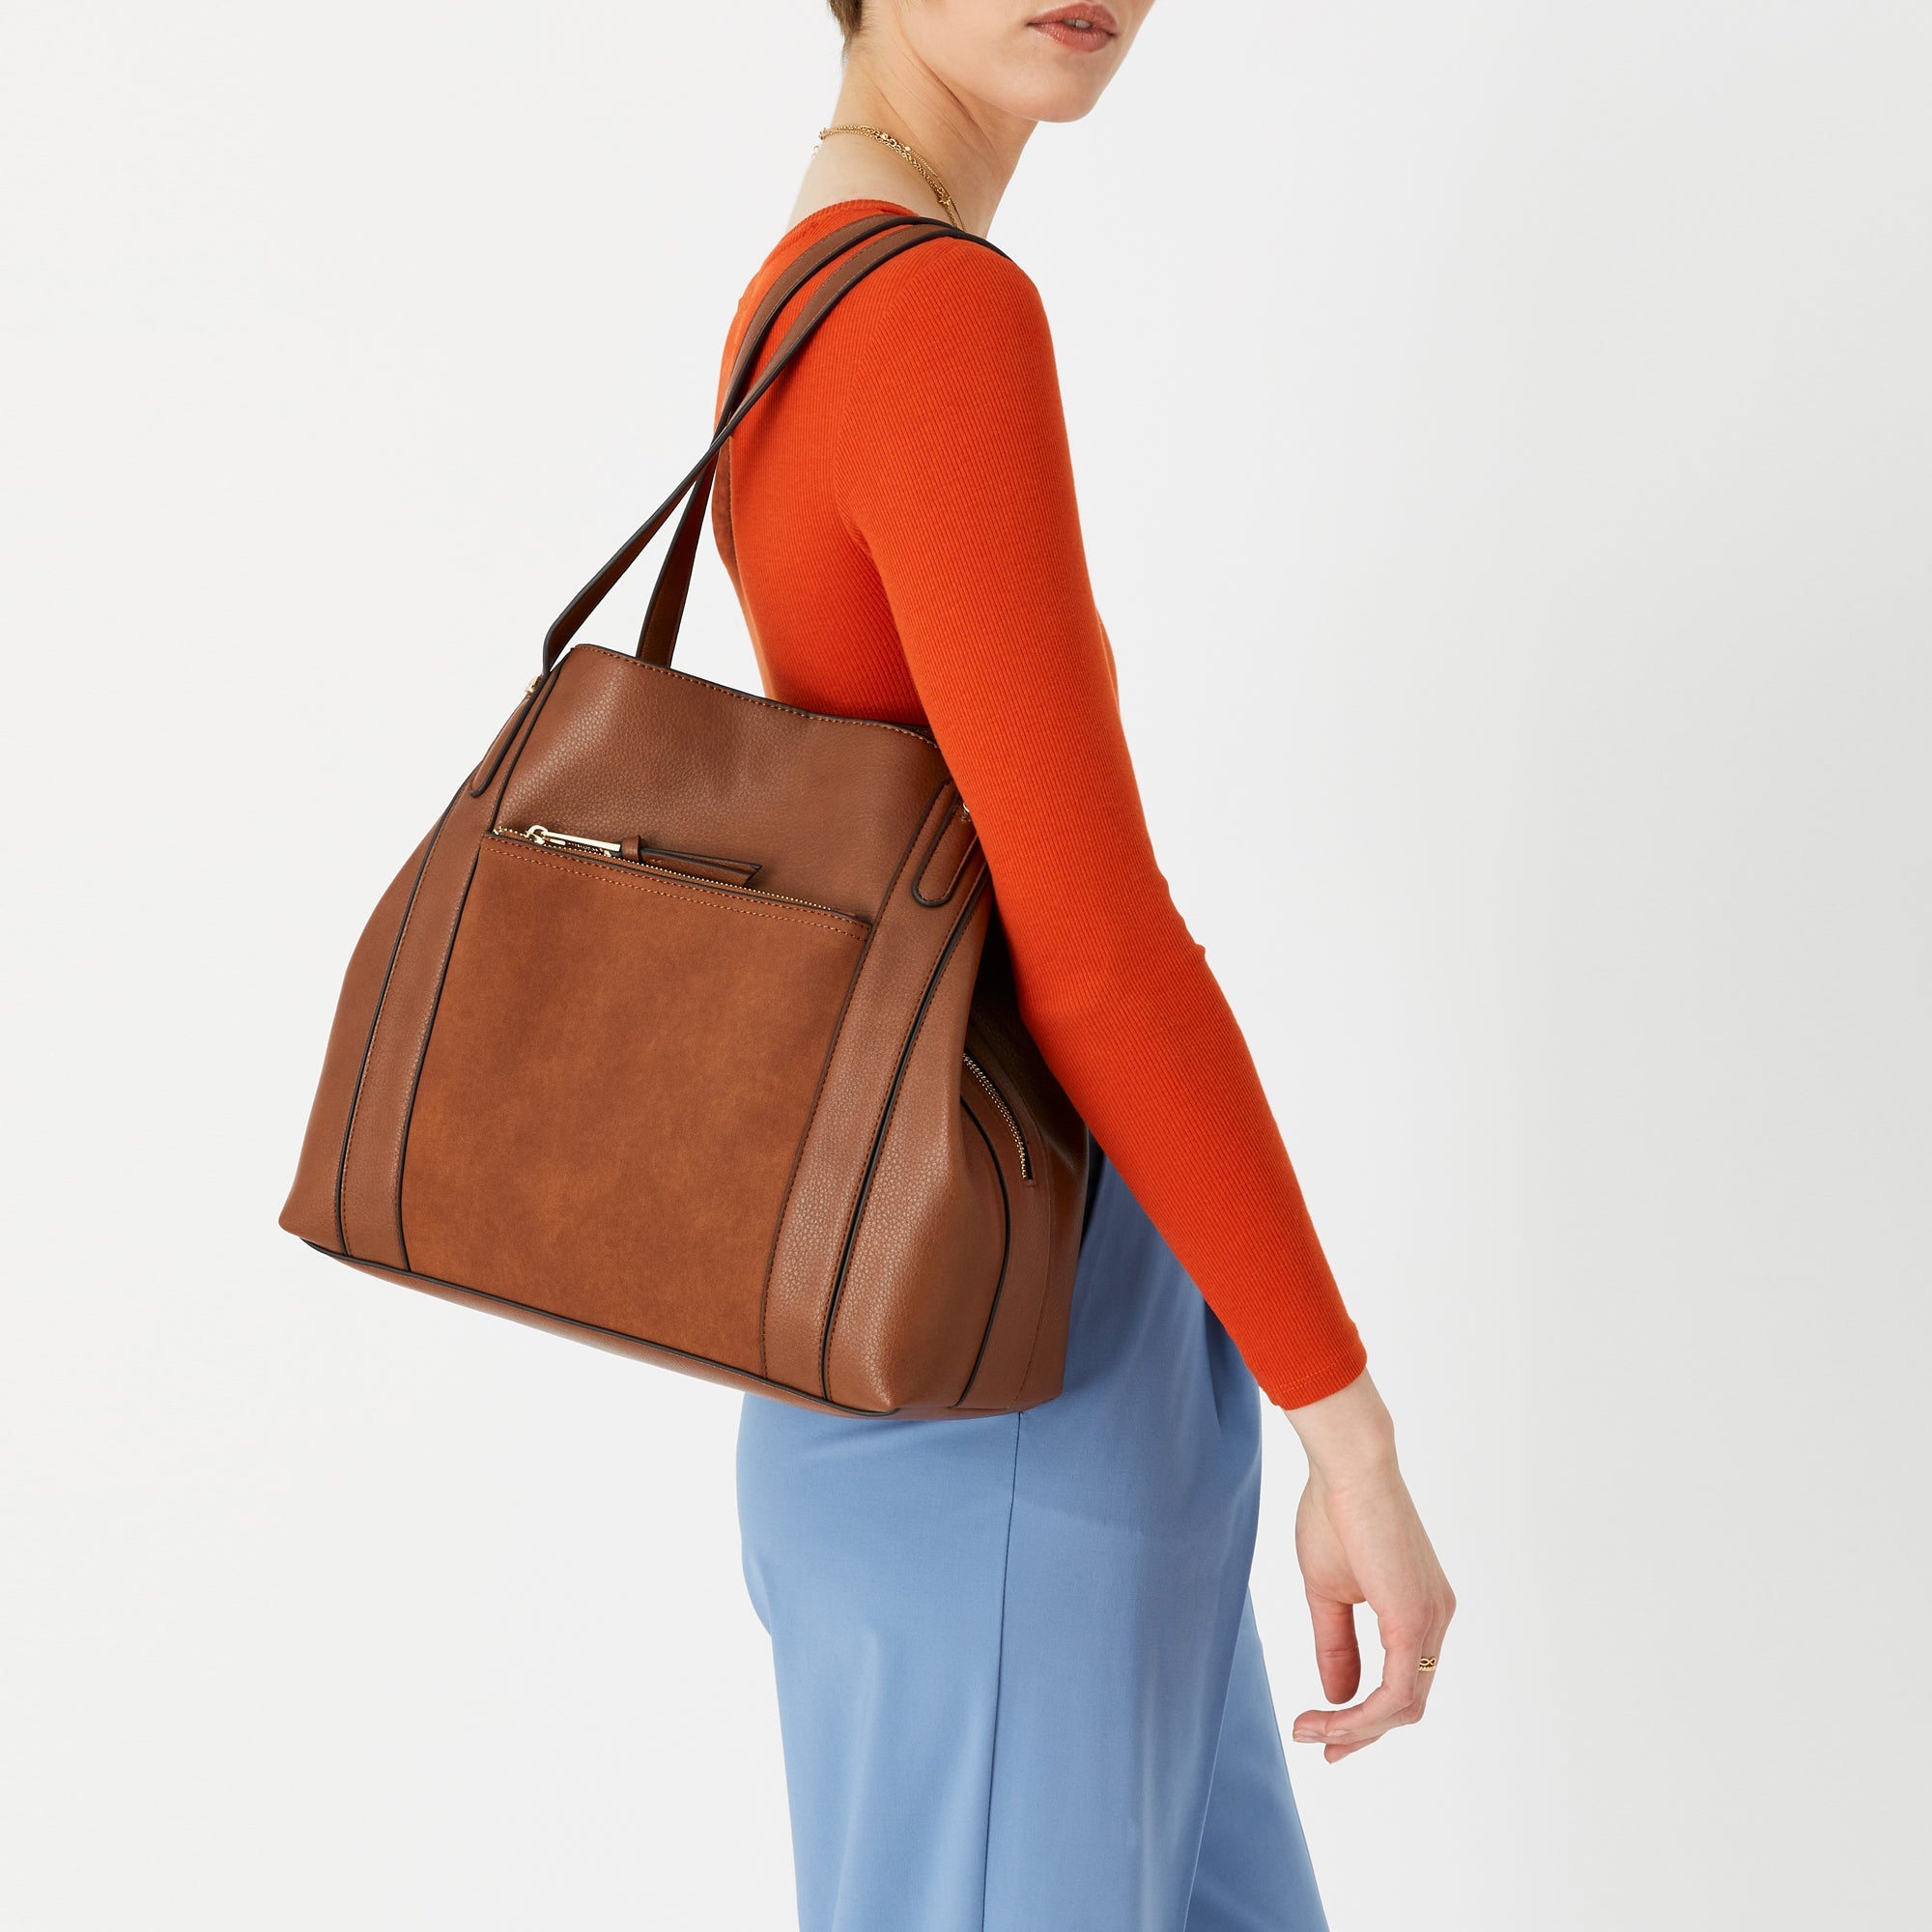 Accessorize London Women's Faux Leather Tan Romeo Shoulder Bag